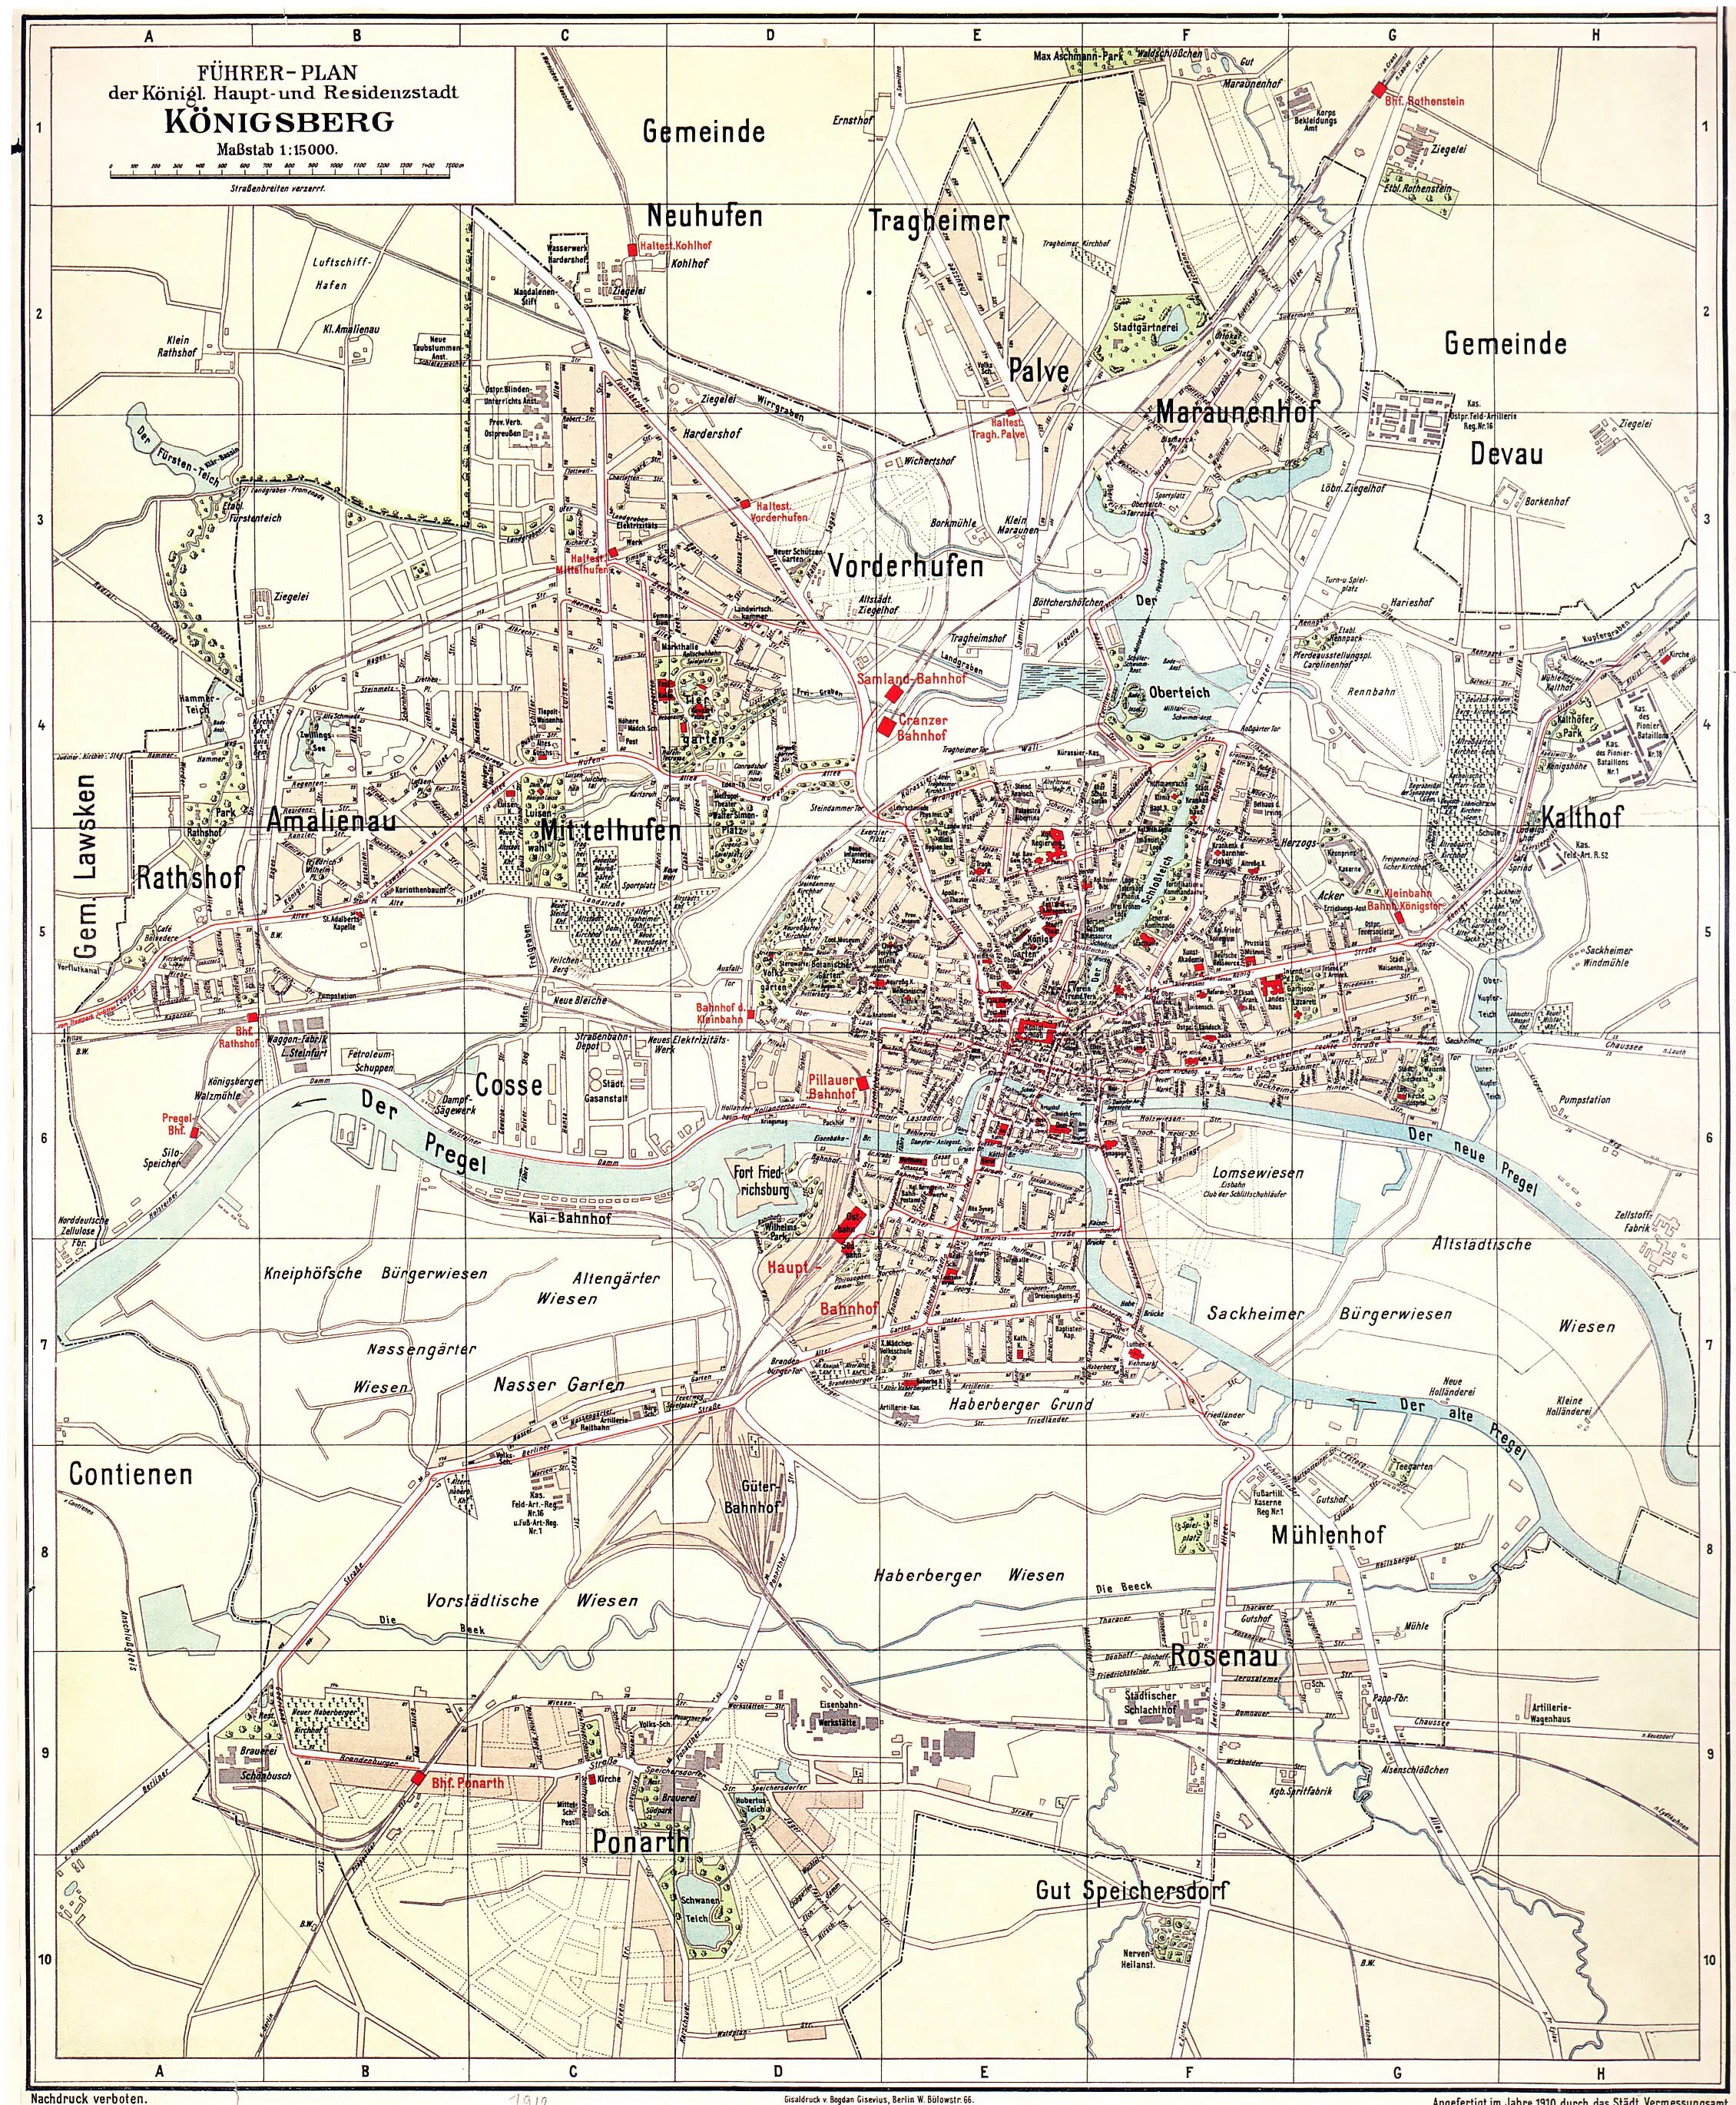 Подпишите на карте город кенигсберг. Кёнигсберг карта 1928 год. Кенигсберг карта 1938. Карта Кенигсберга 1938 года. Старые карты Кенигсберга немецкие.